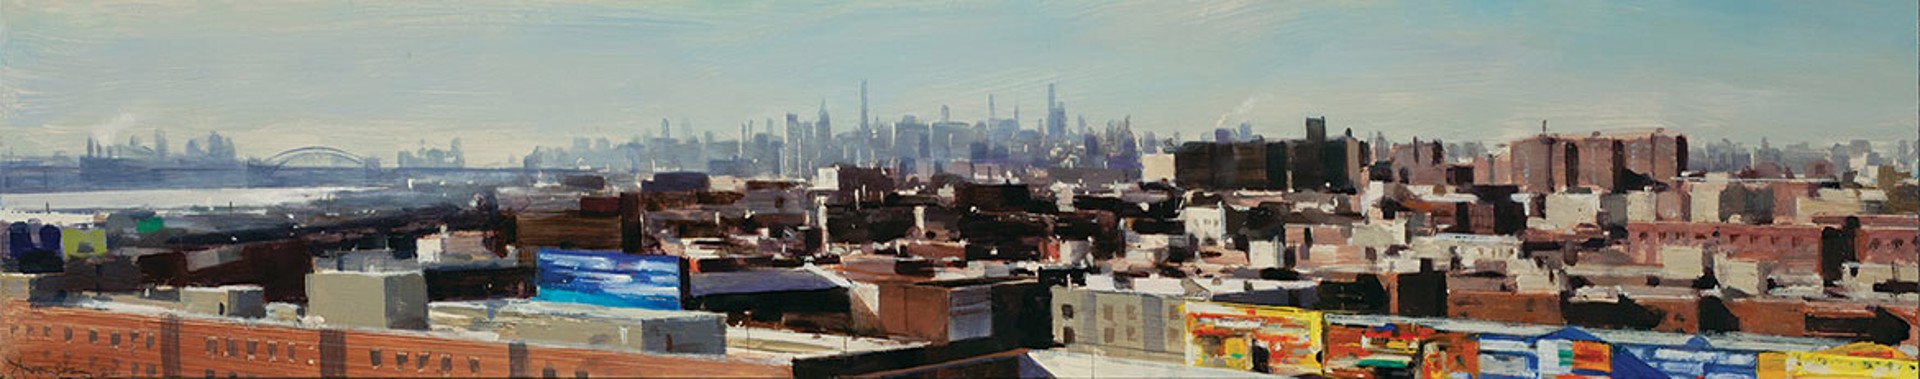 Manhattan Skyline by Ben Aronson